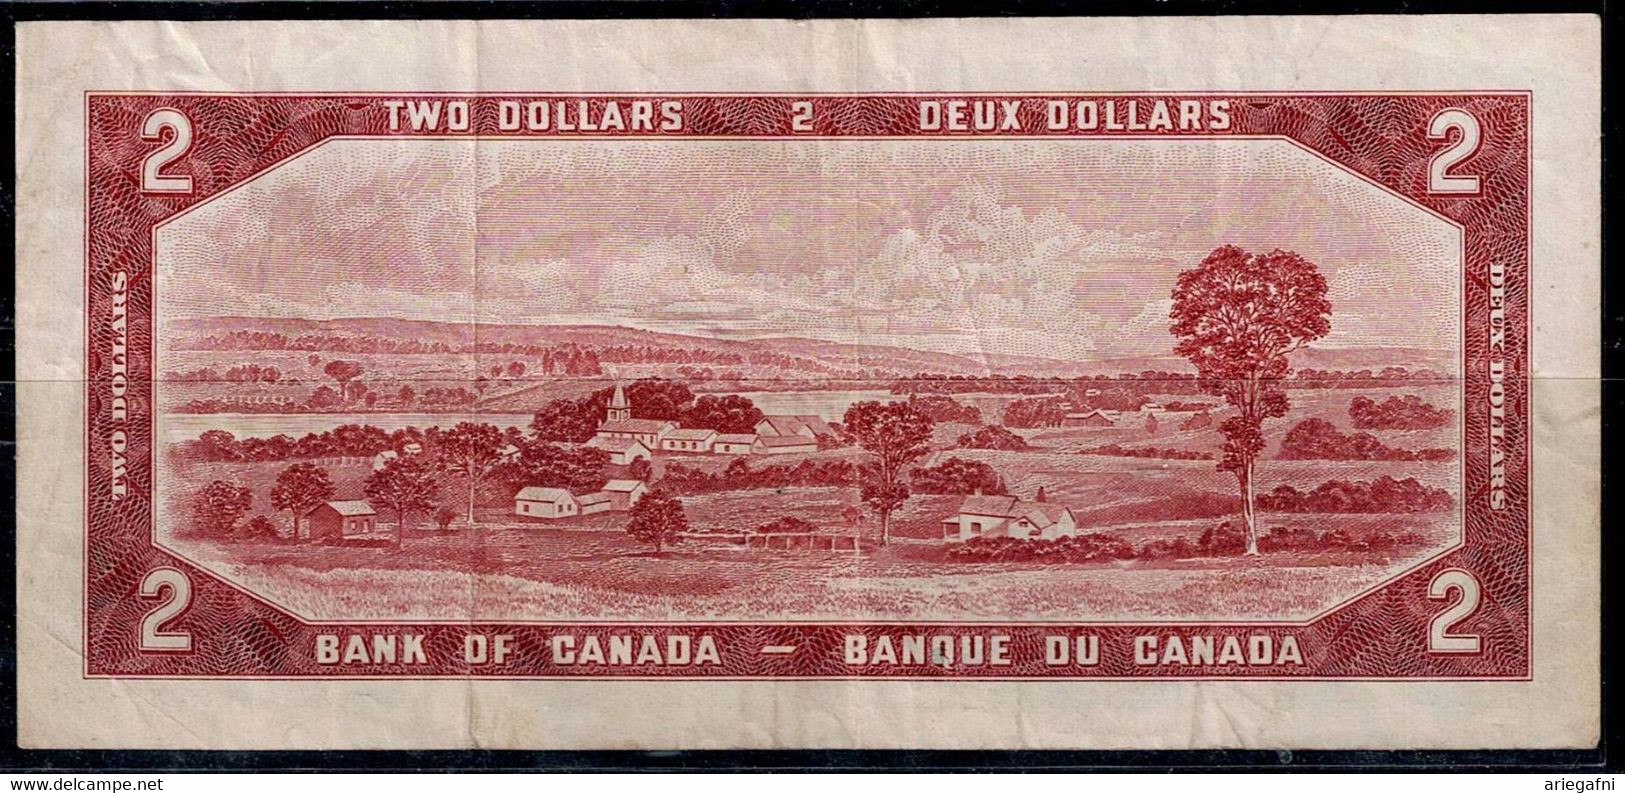 CANADA 1954 BANKNOTES QUEEN ELIZABETH II VF!! - Canada